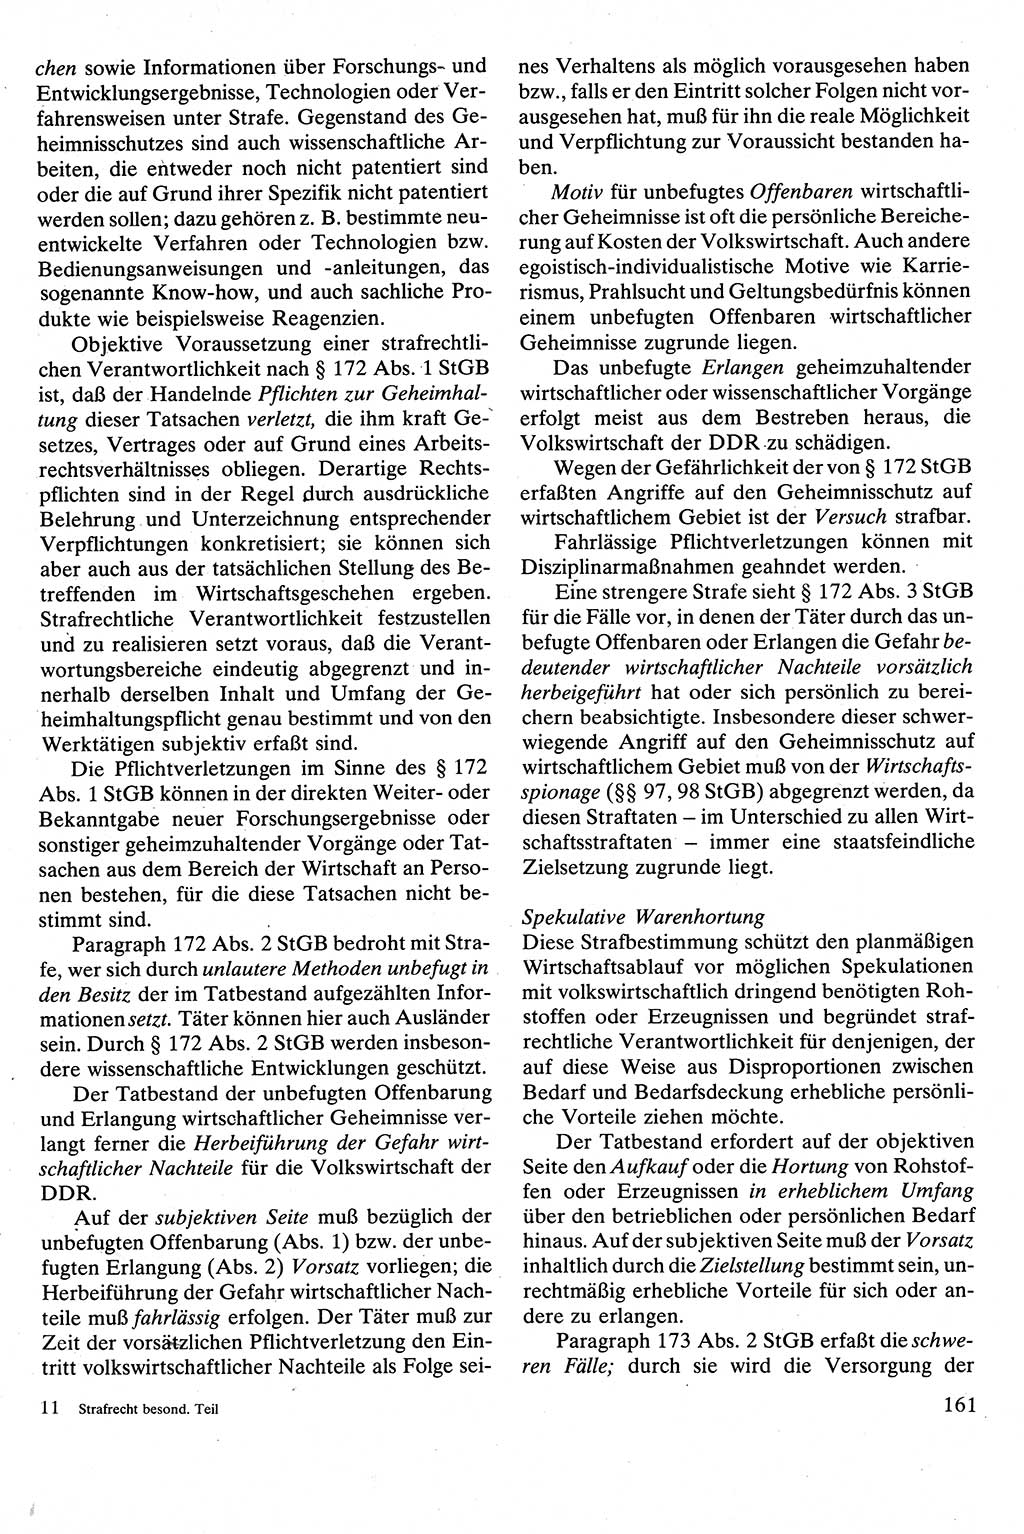 Strafrecht [Deutsche Demokratische Republik (DDR)], Besonderer Teil, Lehrbuch 1981, Seite 161 (Strafr. DDR BT Lb. 1981, S. 161)